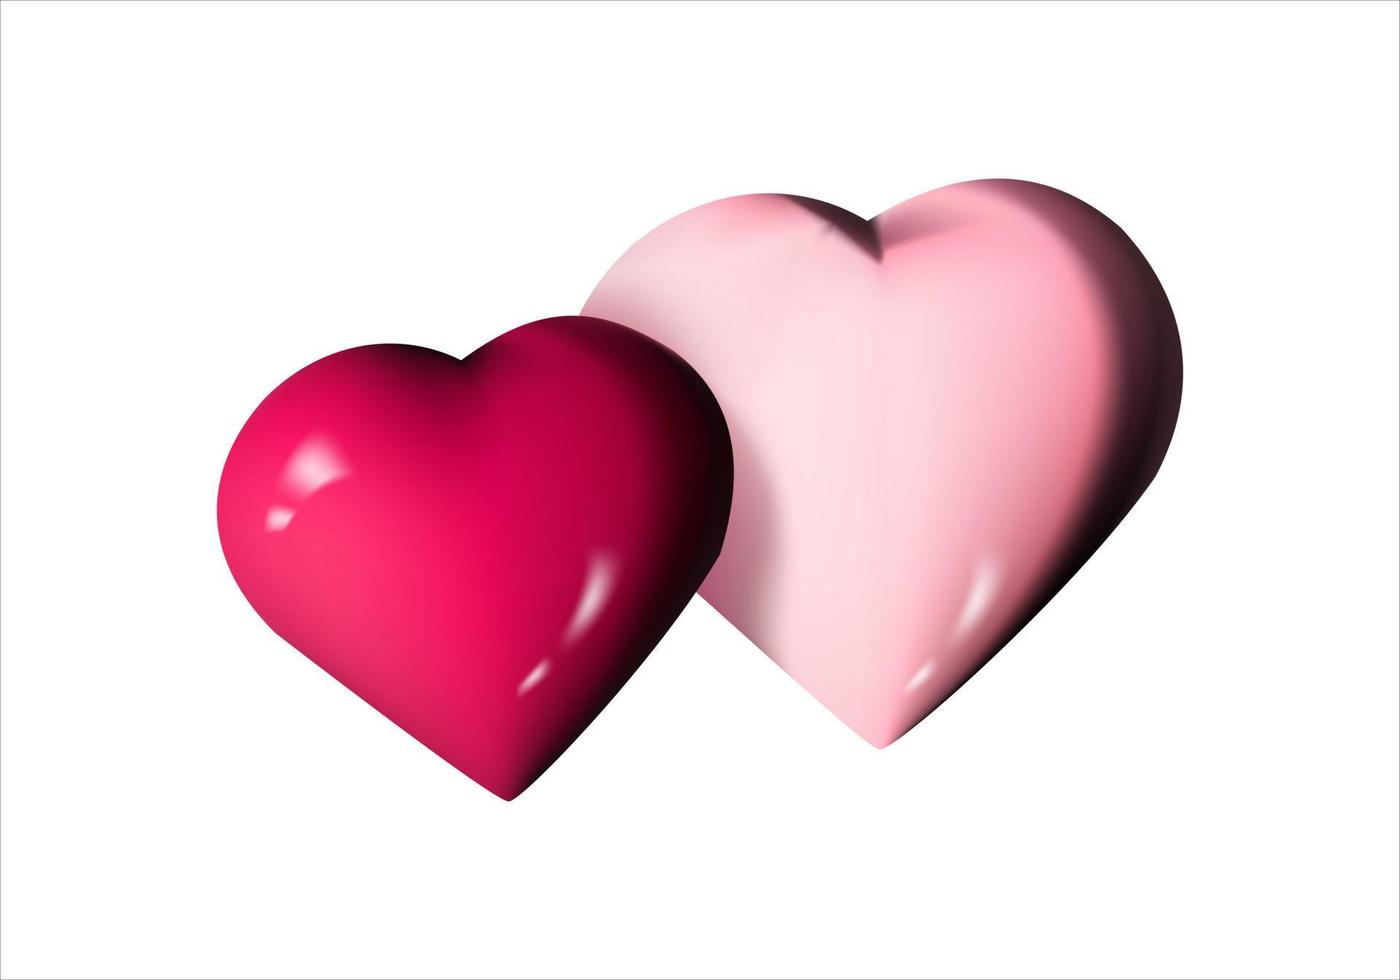 Juguete con forma de corazón rojo de dibujos animados en 3D. adecuado para la decoración del día de san valentín y el día de la madre. vector